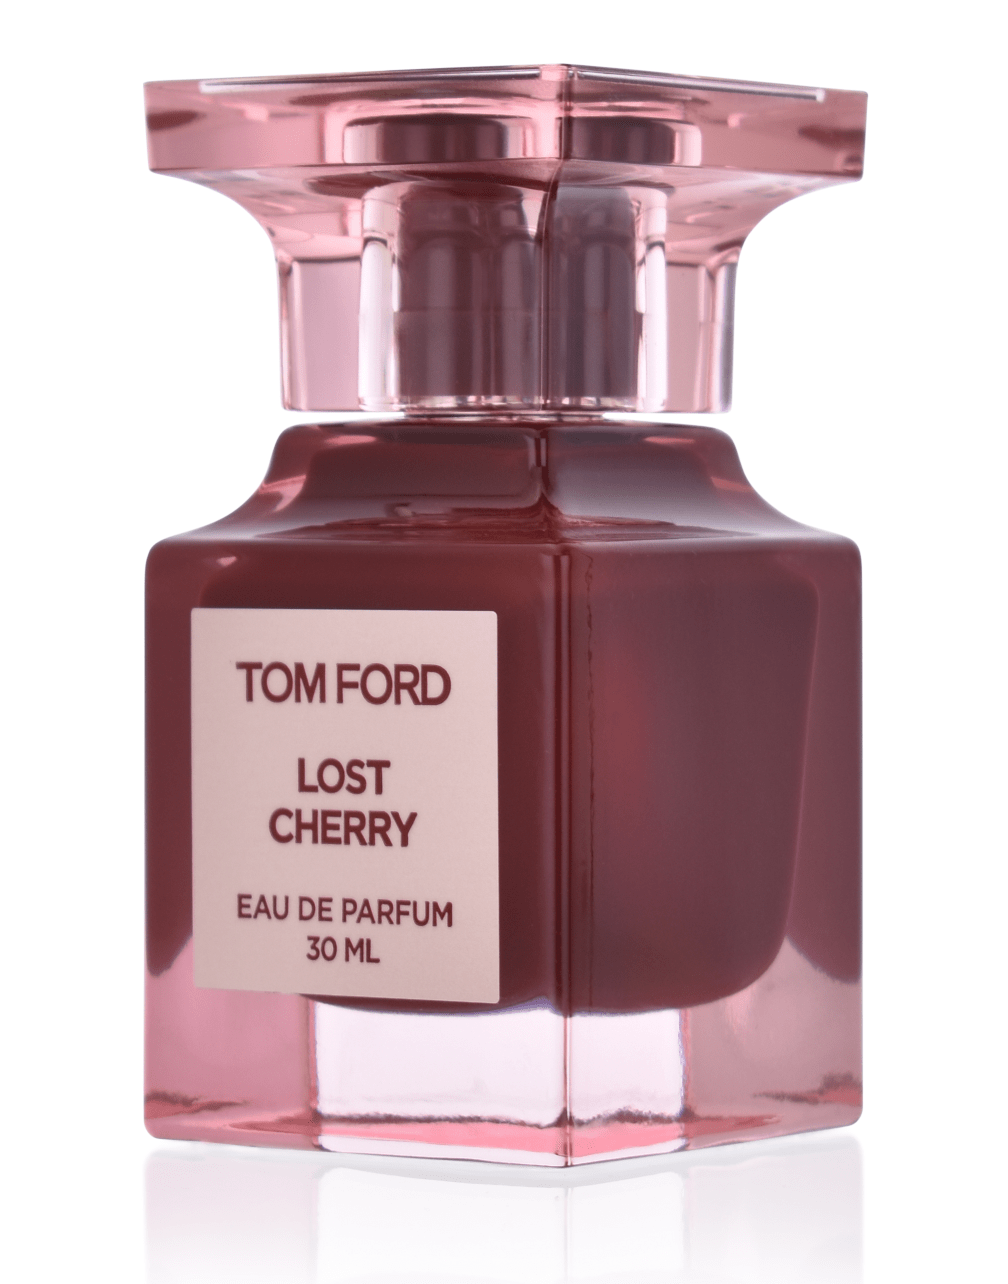 Tom Ford Lost Cherry 30 ml Eau de Parfum